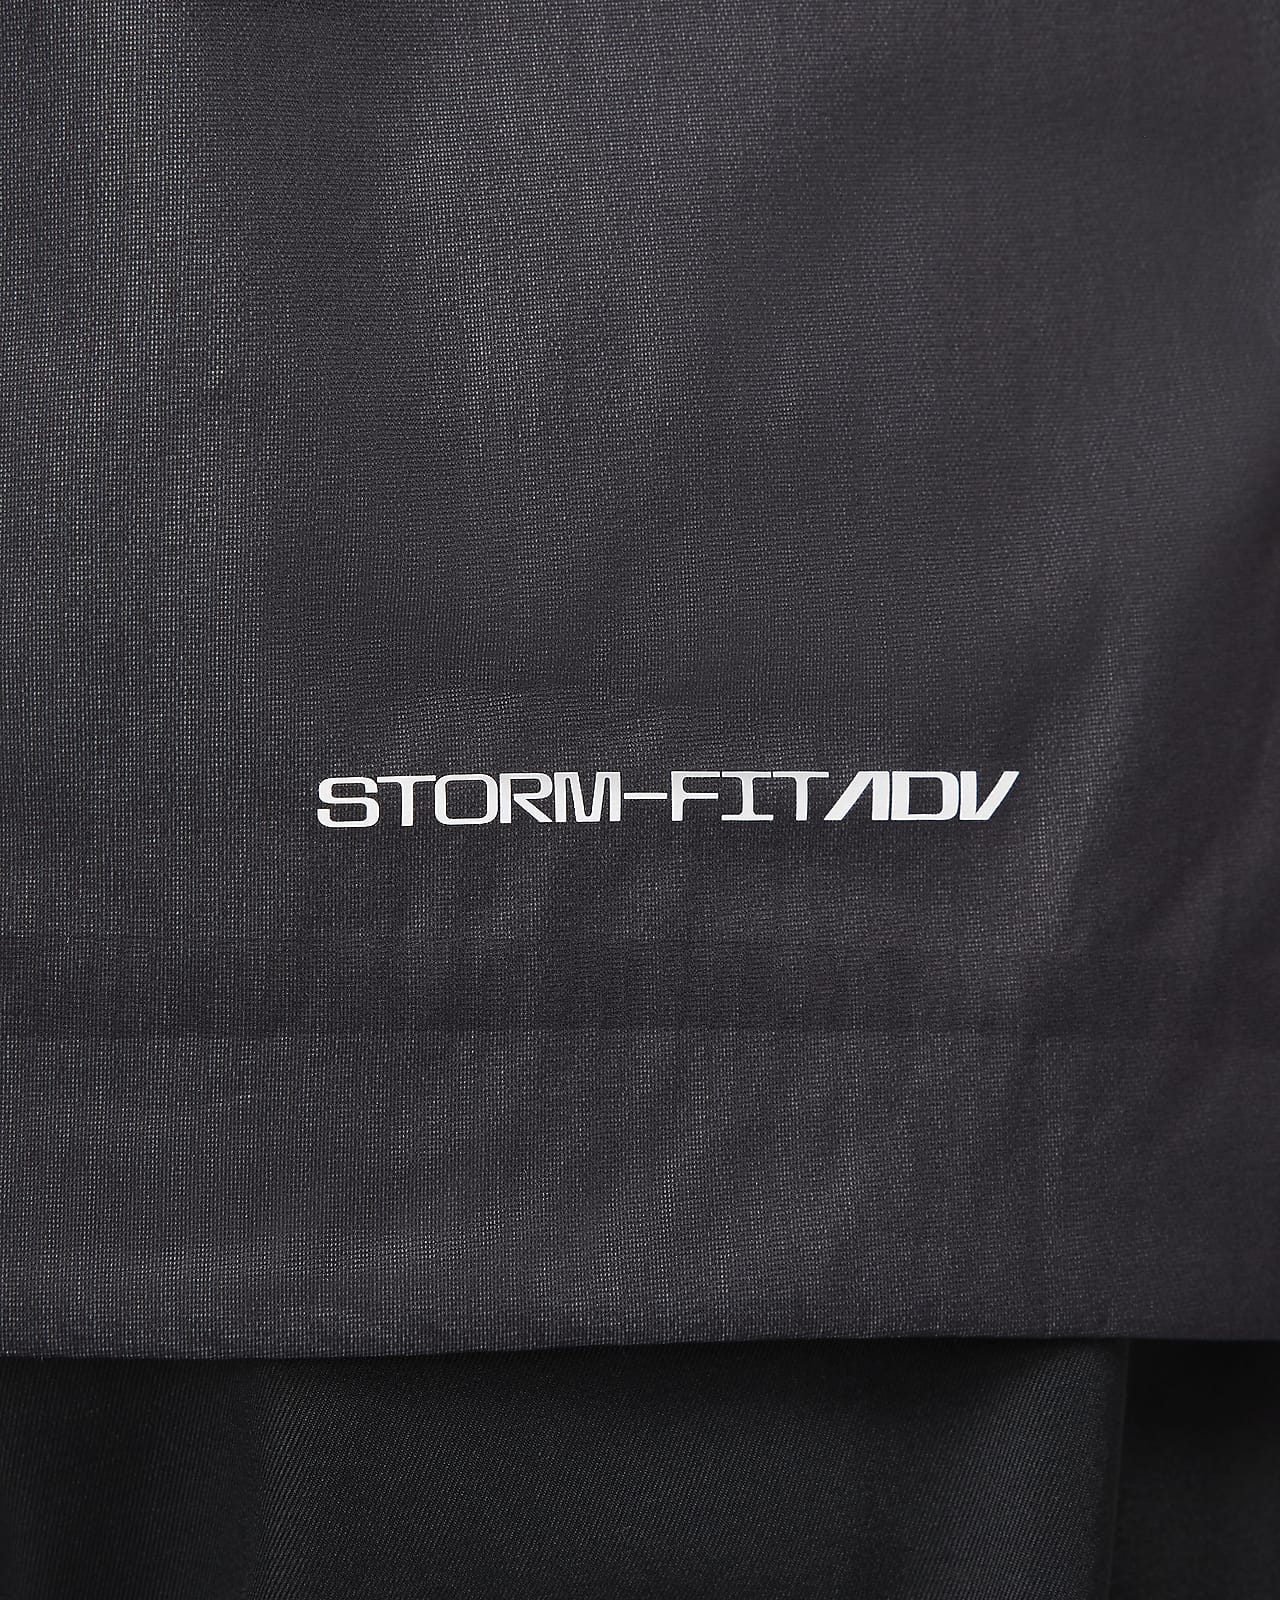 NIKE公式】ナイキ Storm-FIT ADV メンズ フルジップ ゴルフジャケット